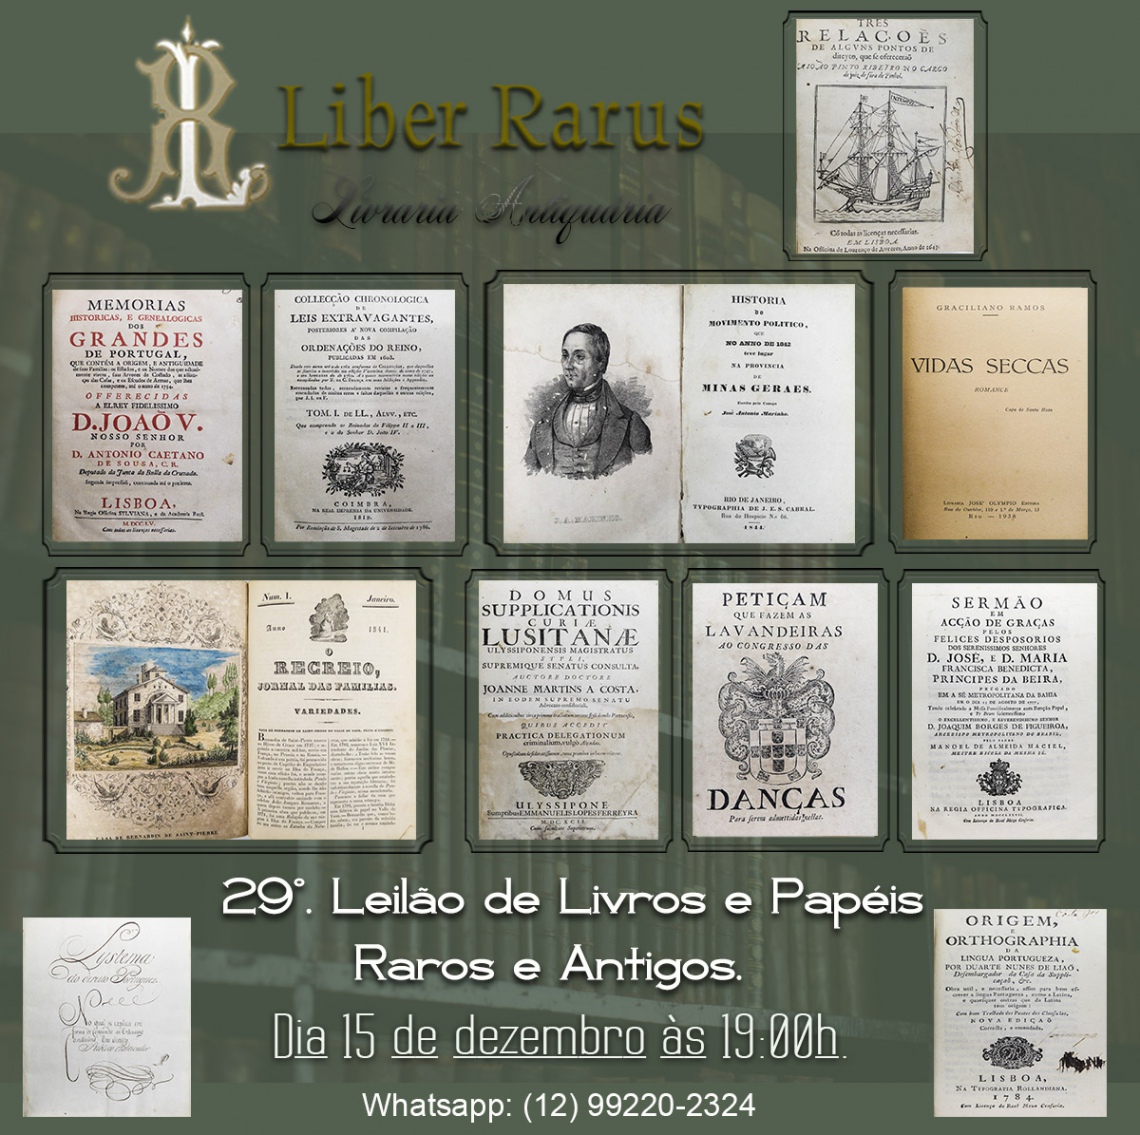 29º Leilão de Livros e Papéis Raros e Antigos - Liber Rarus - 15/12/2021 - 19h00